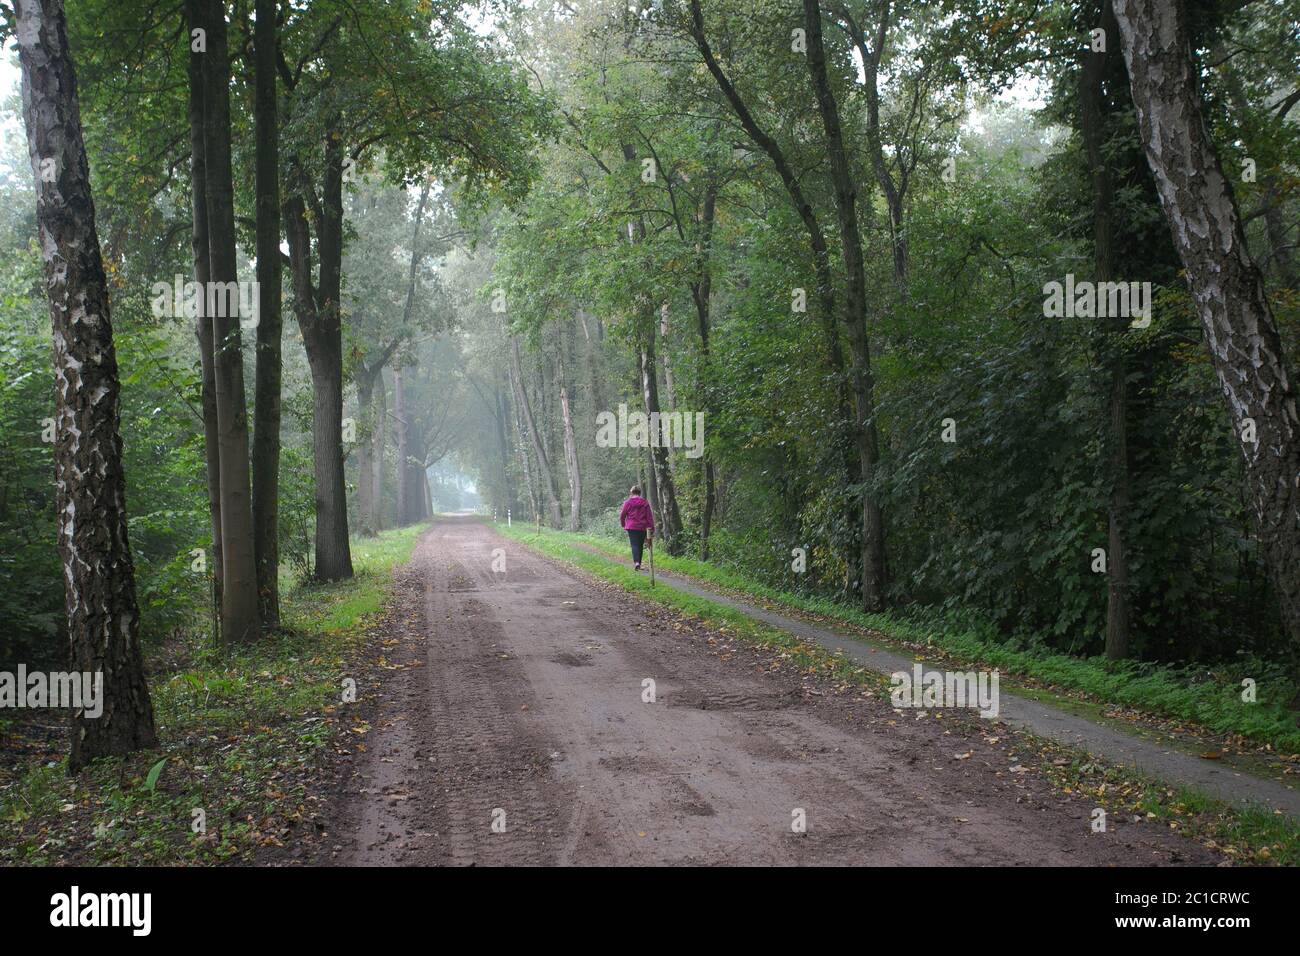 femme marchant seule sur un chemin forestier portant un long manteau ou un manteau rose. Fille vue arrière de la promenade dans les bois du parc naturel duin Banque D'Images